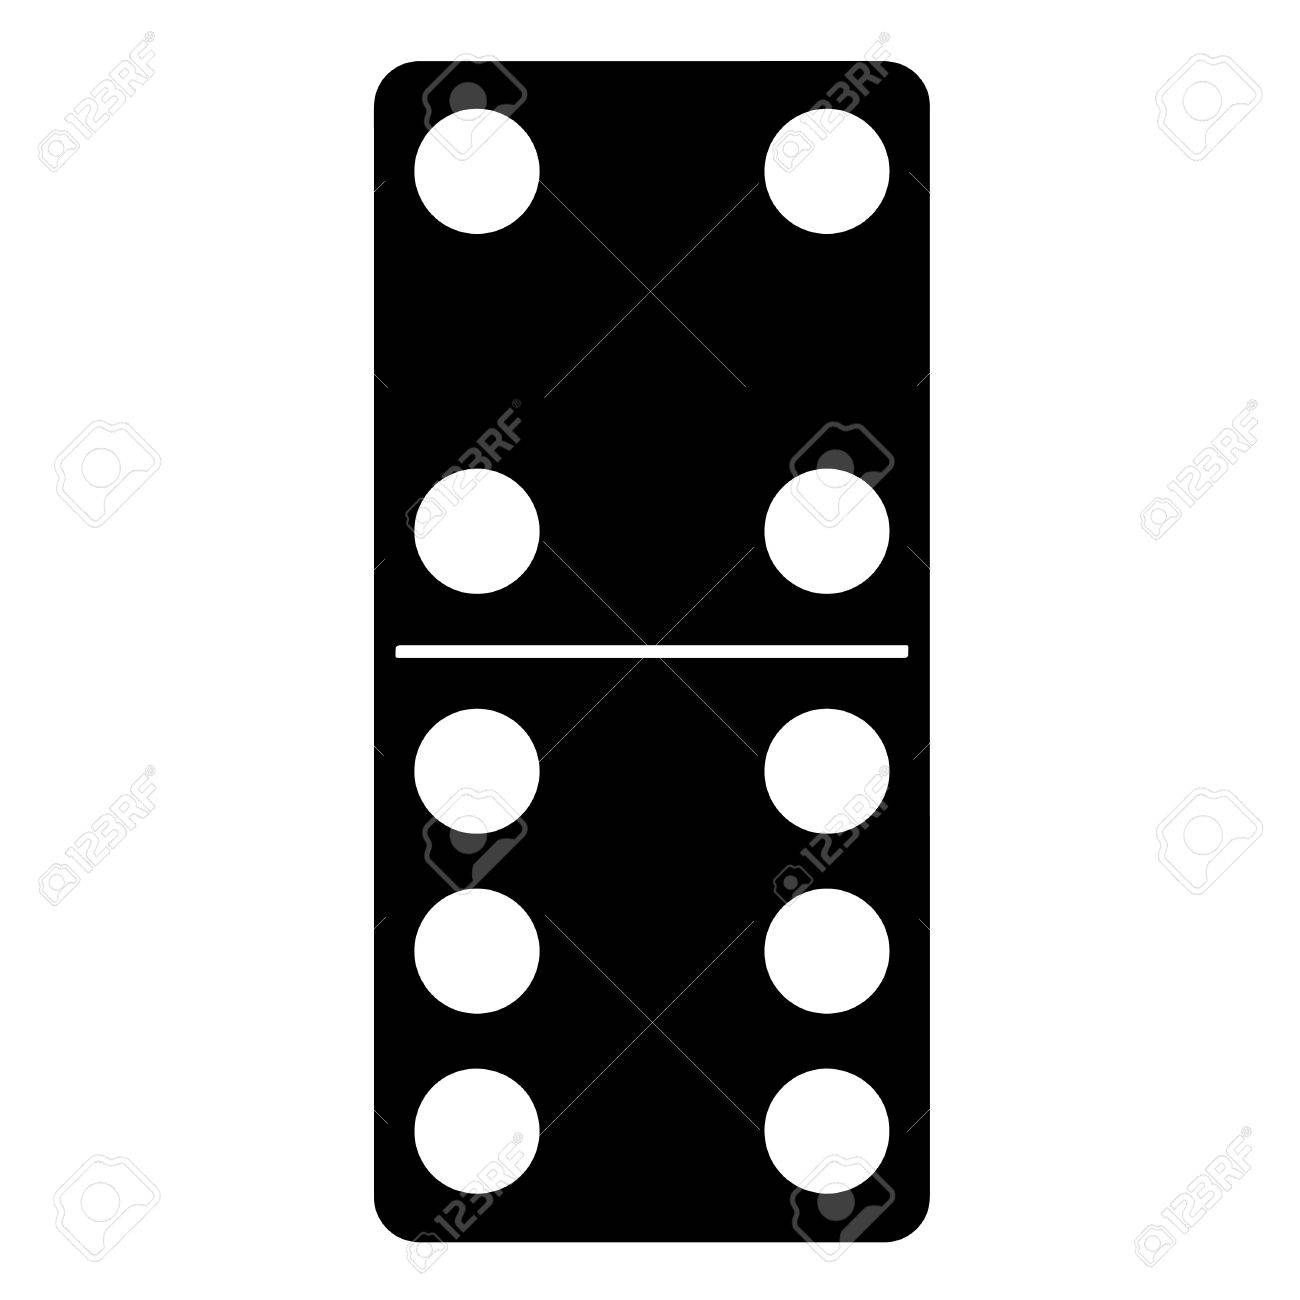 domino clipart variation